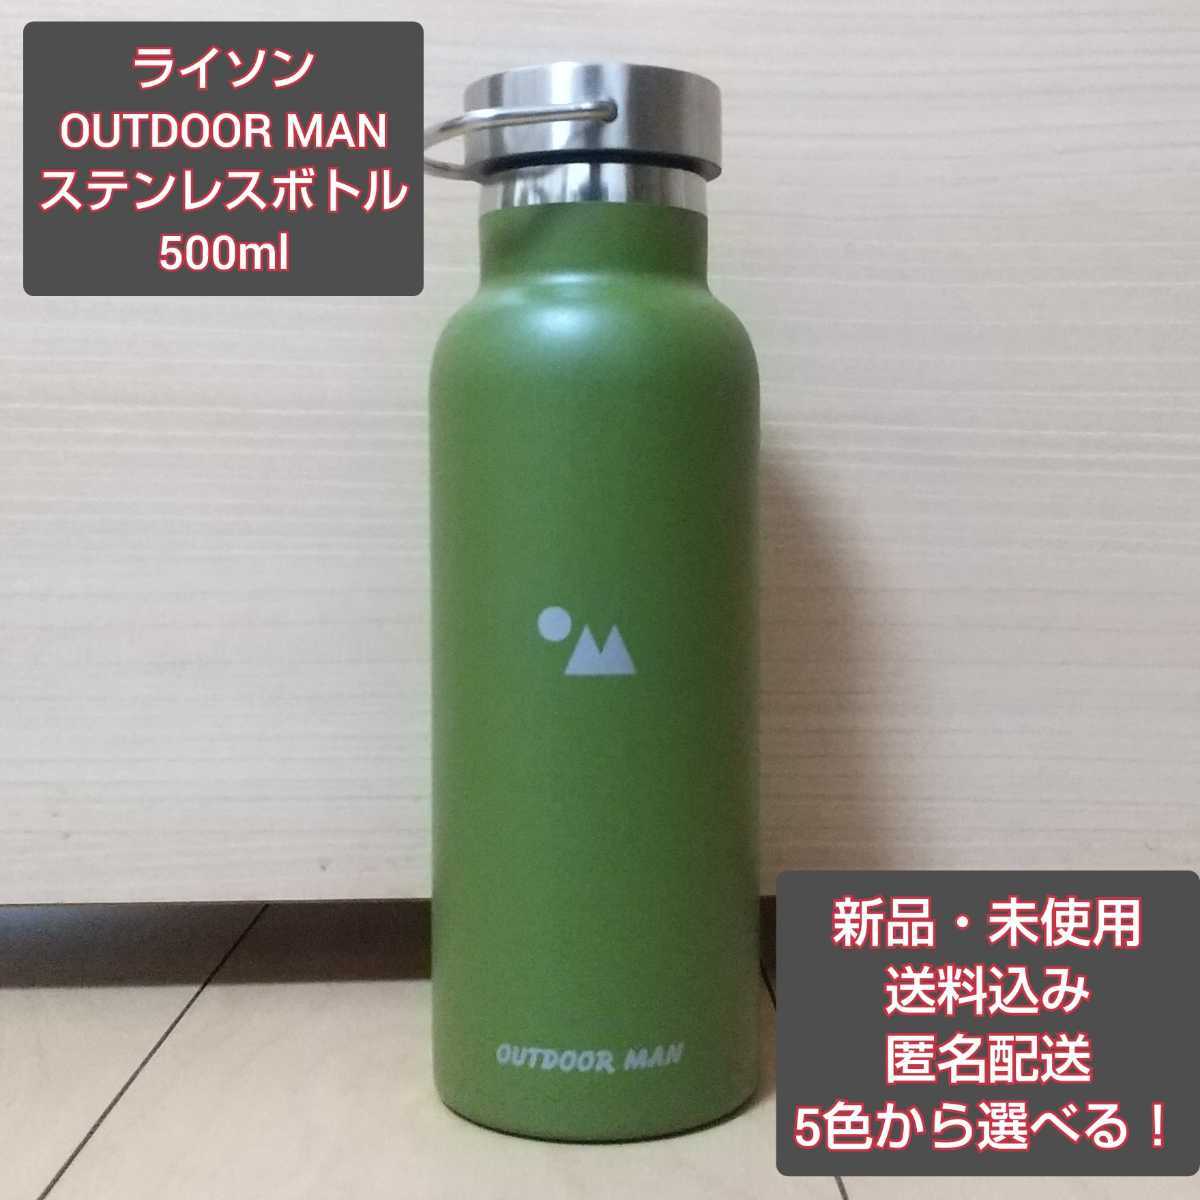 【新品】ライソン OUTDOOR MAN ステンレスボトル 500ml オリーブ